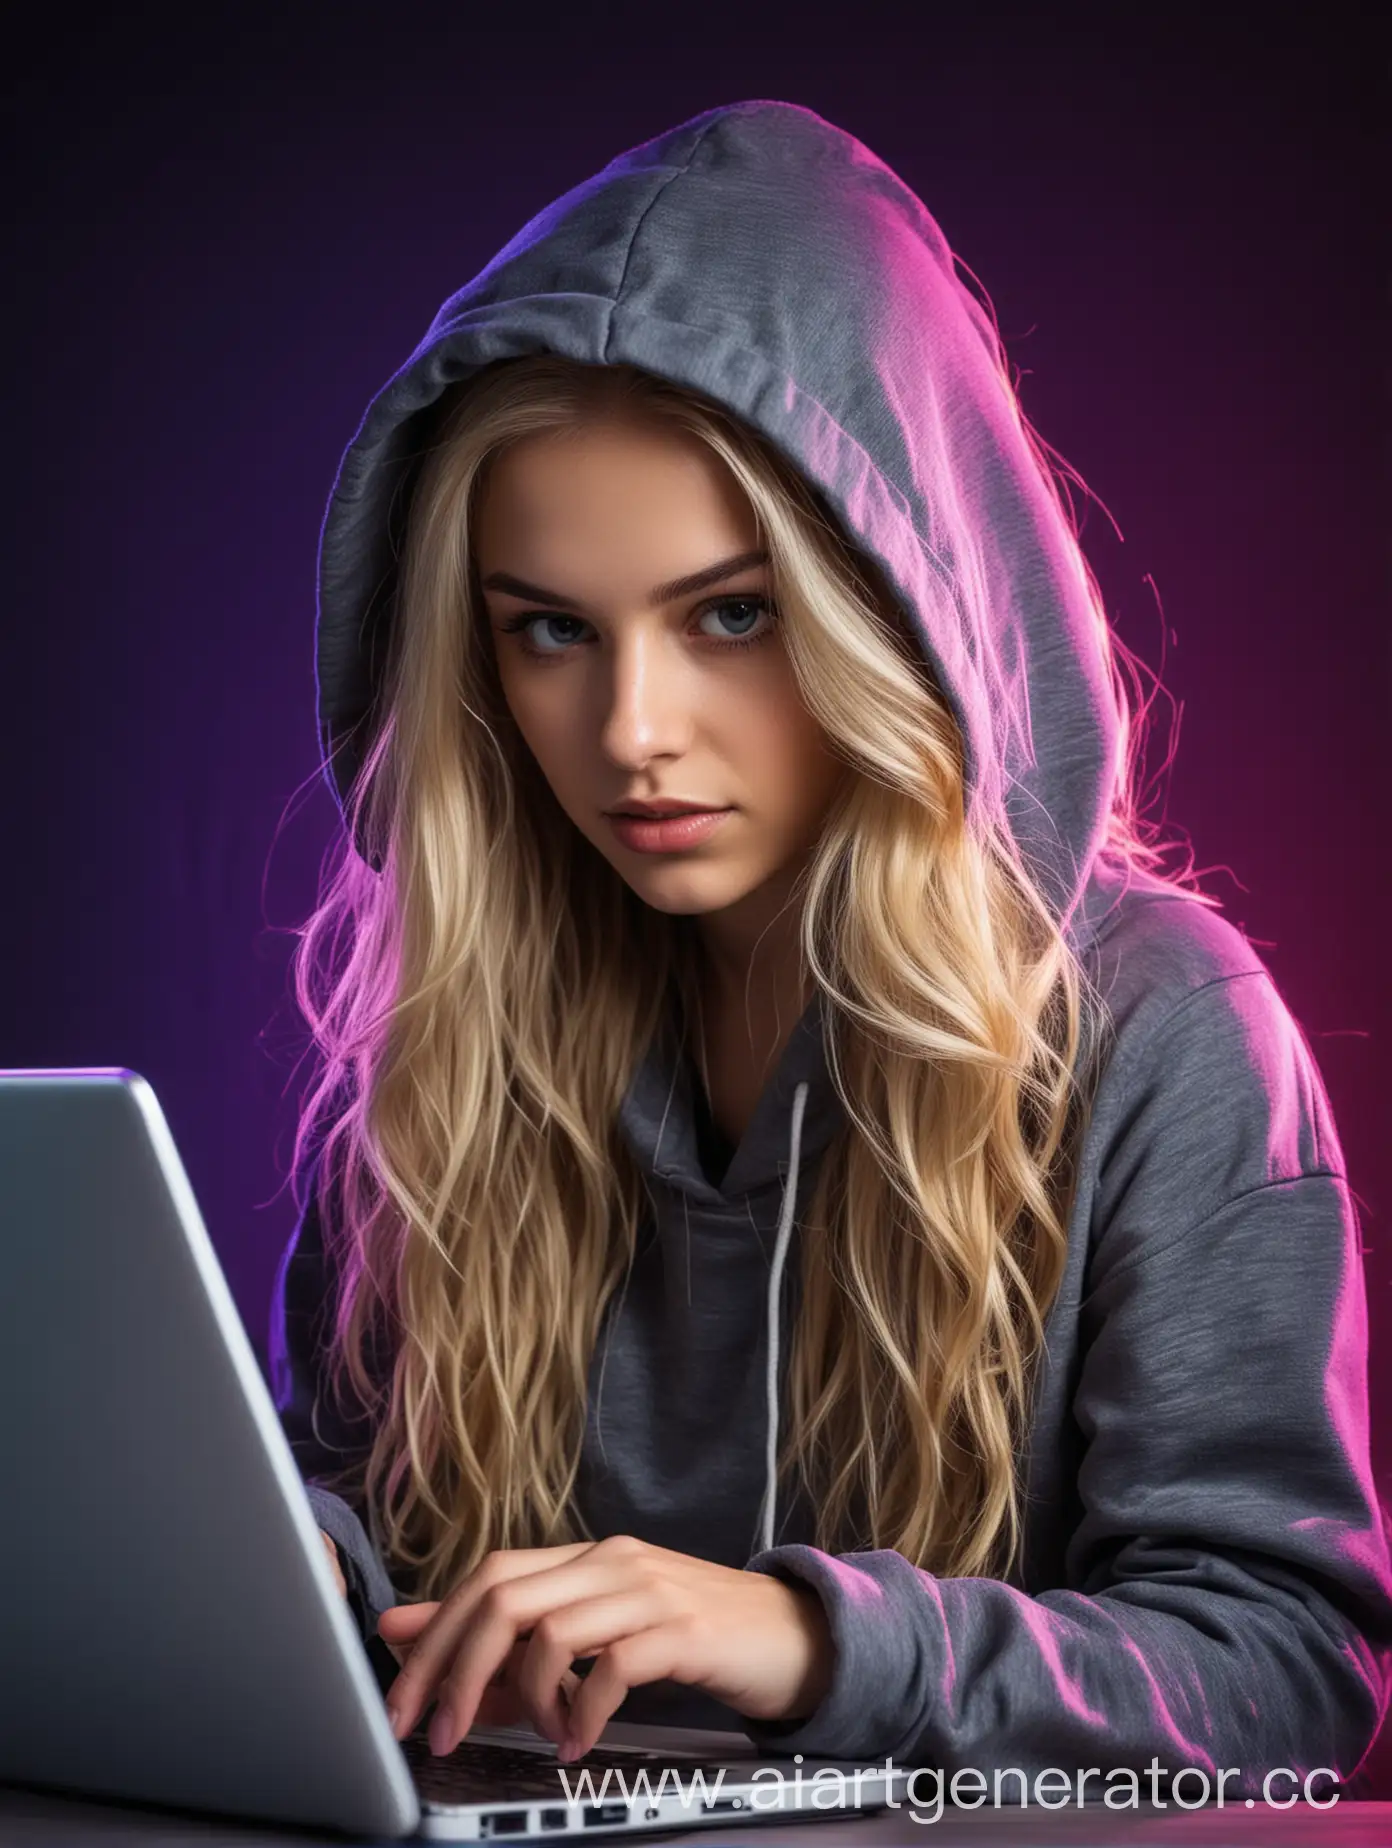 девушка хакер в капюшоне, длинные волнистые русые волосы, перед девушкой ноутбук, на фоне неоновые пиксели